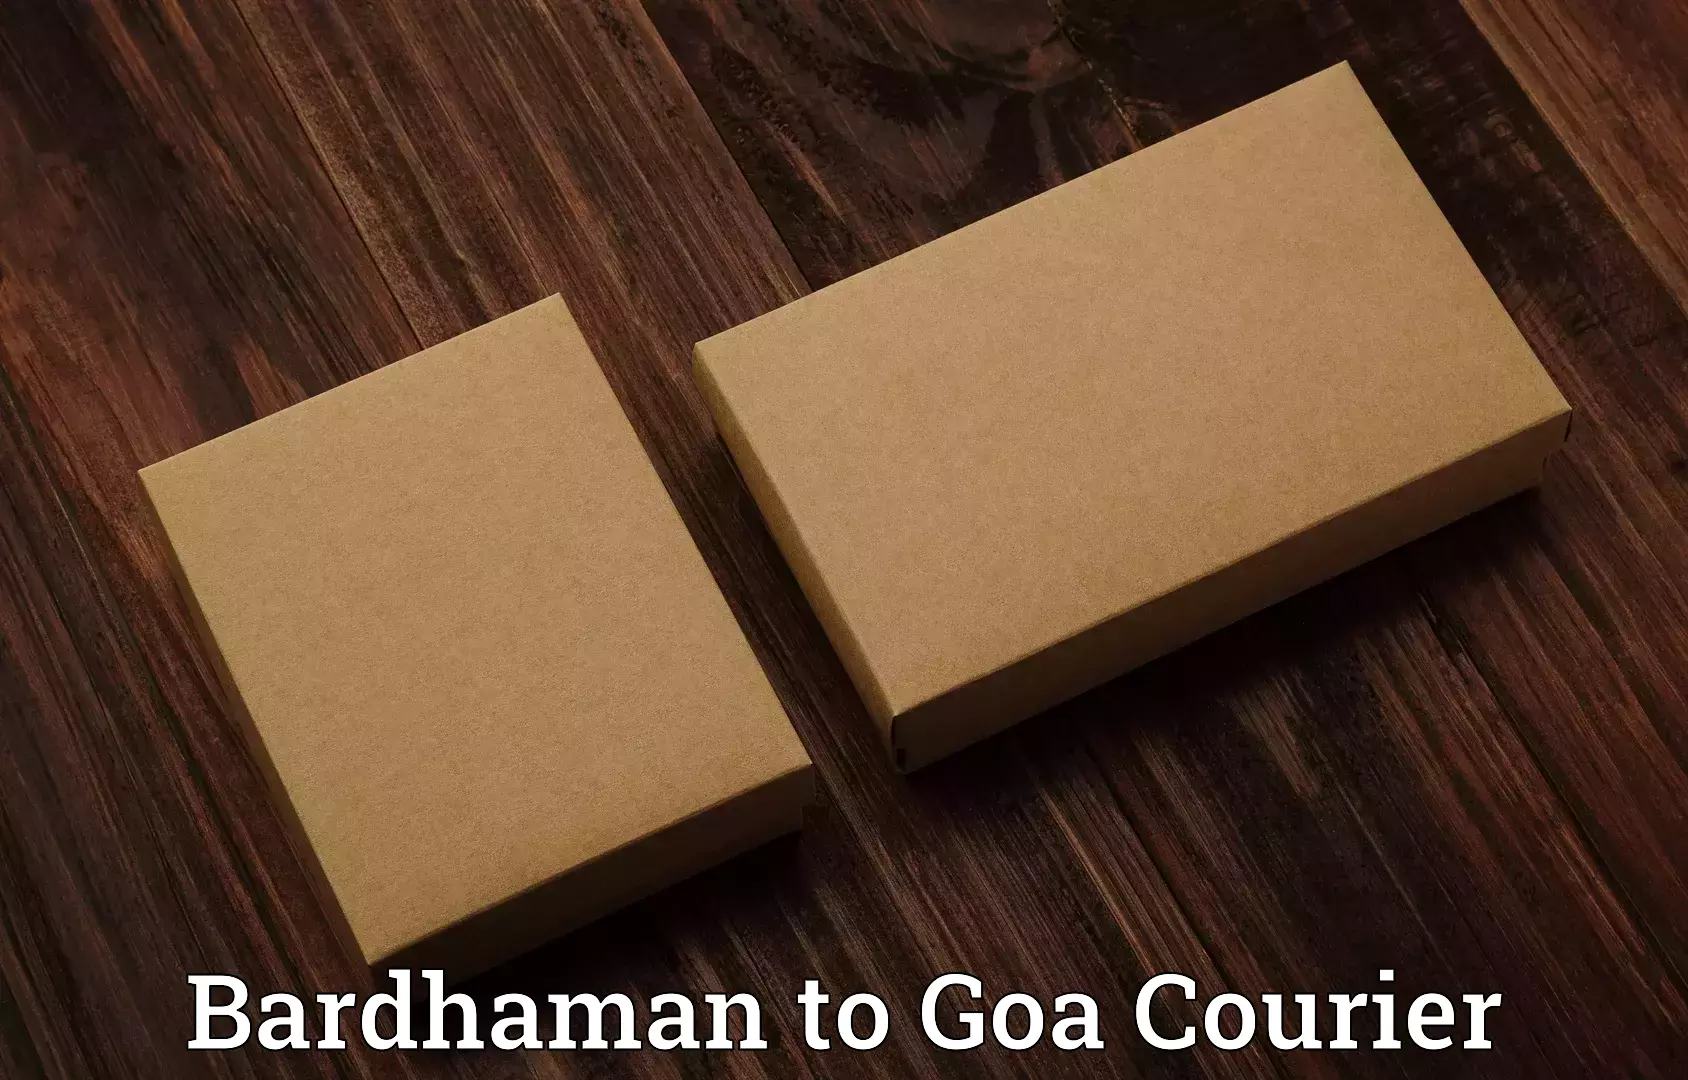 Express luggage delivery Bardhaman to IIT Goa